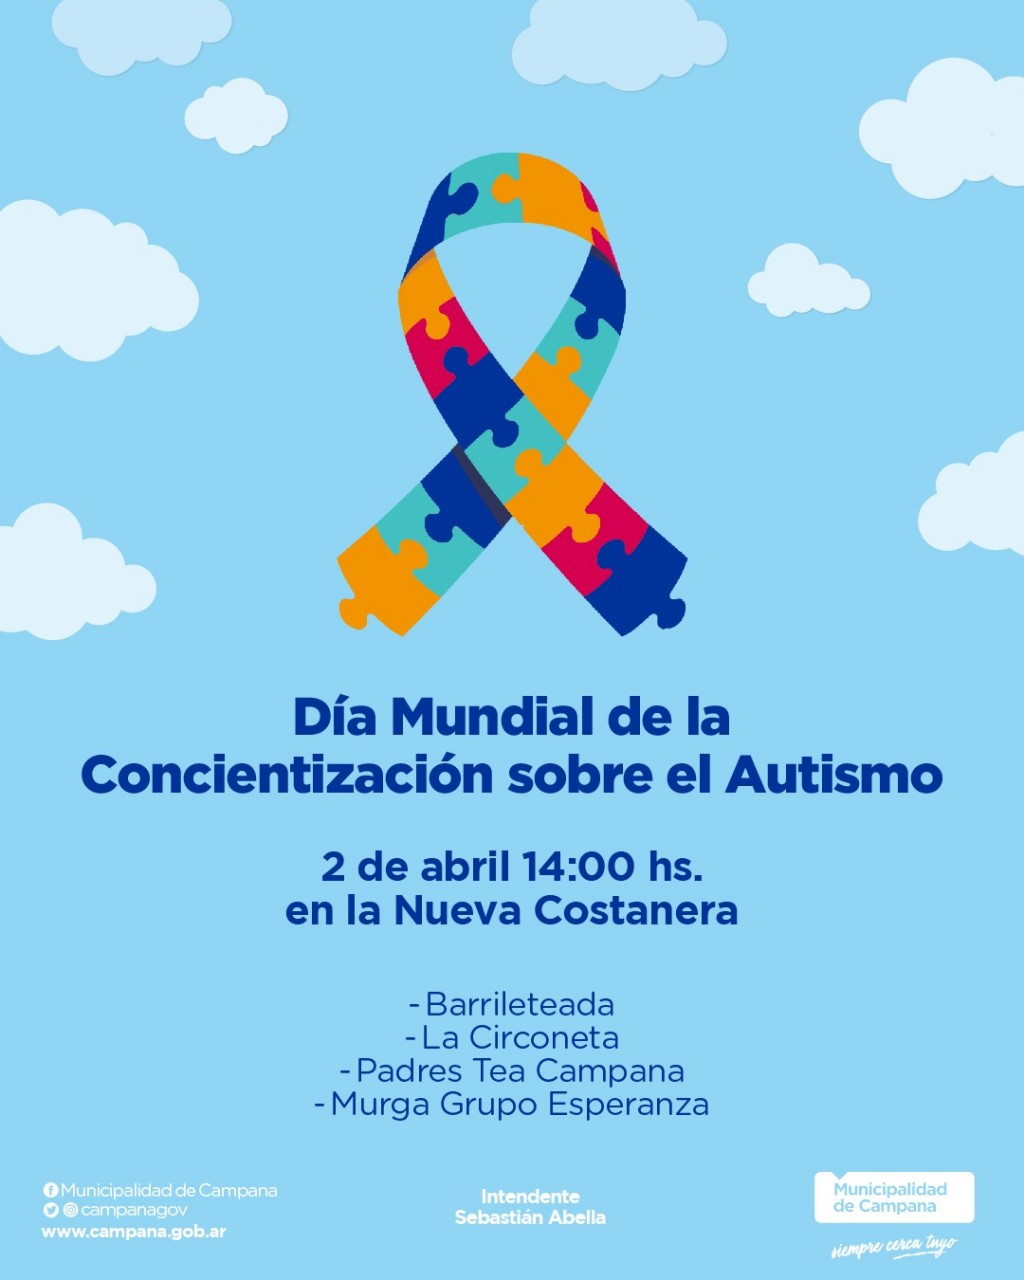 Con una barrileteada, se conmemorará el Día Mundial de Concientización sobre el Autismo